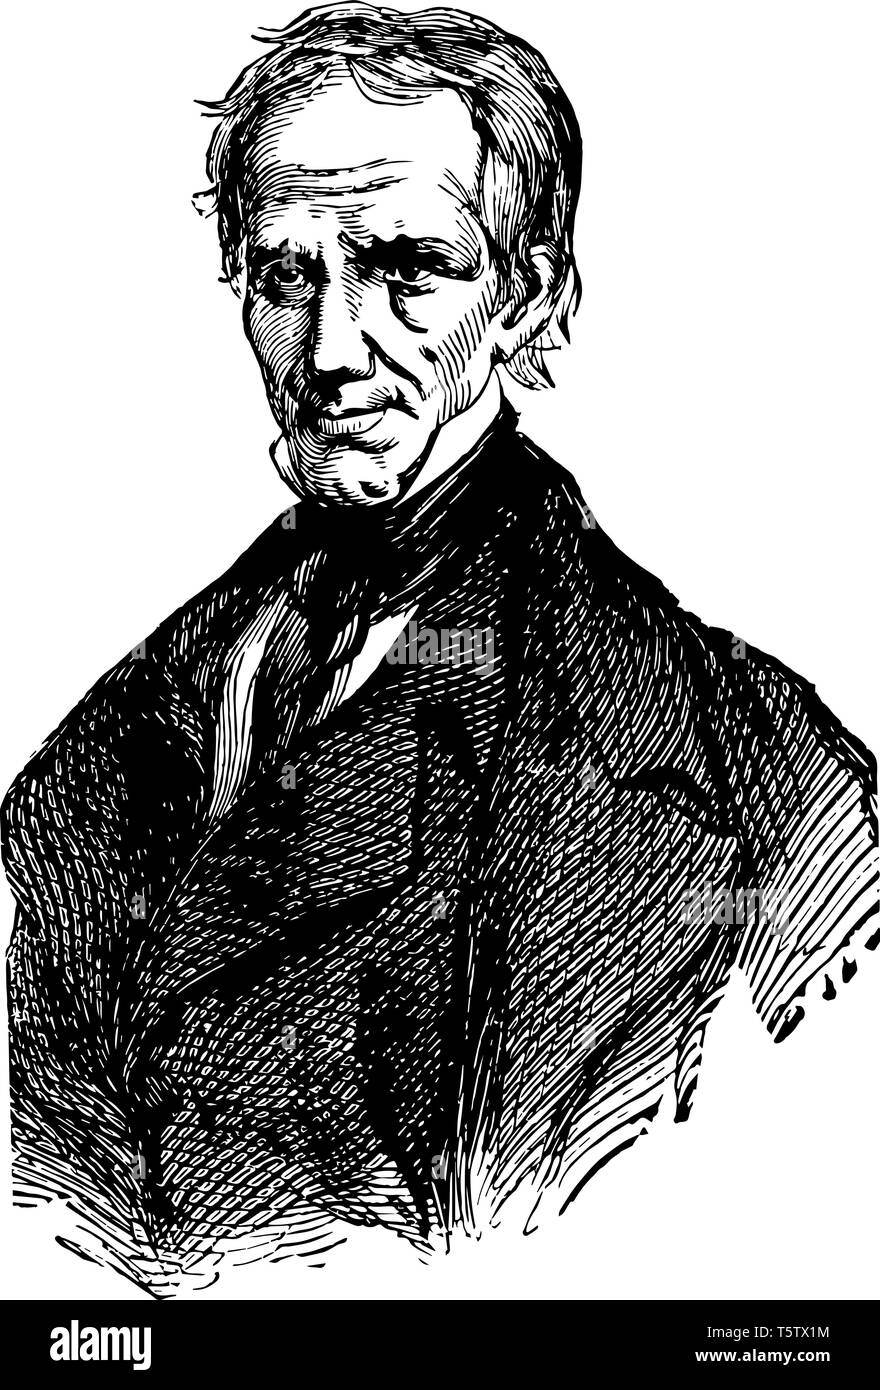 Henry Clay 1777 à 1852, il est un orateur habile homme d'United States sénateur de l'Illinois et le président de la Chambre des représen Illustration de Vecteur